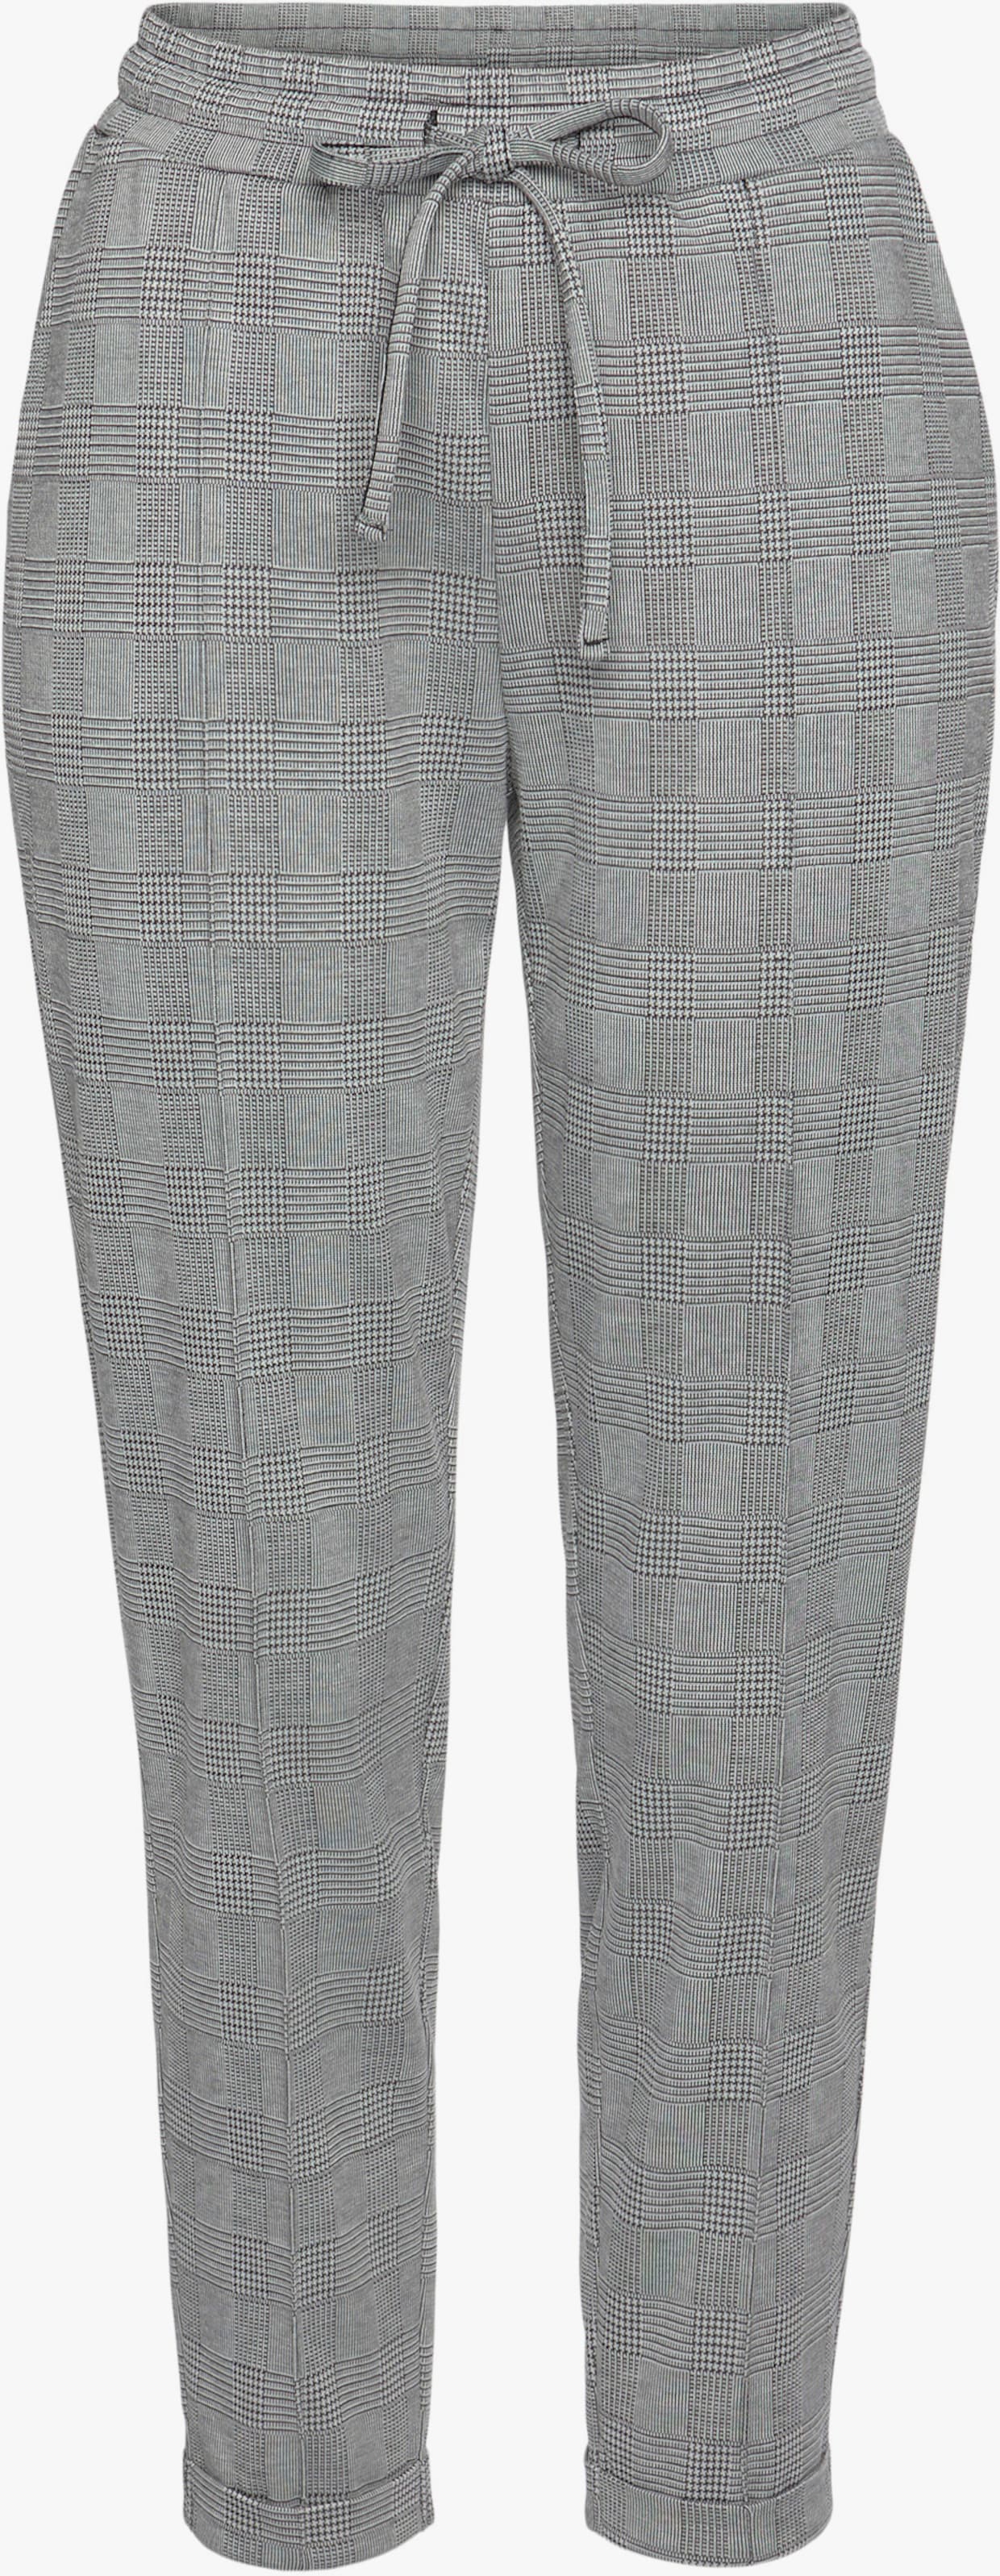 Vivance pantalon de jogging - gris-noir à carreaux